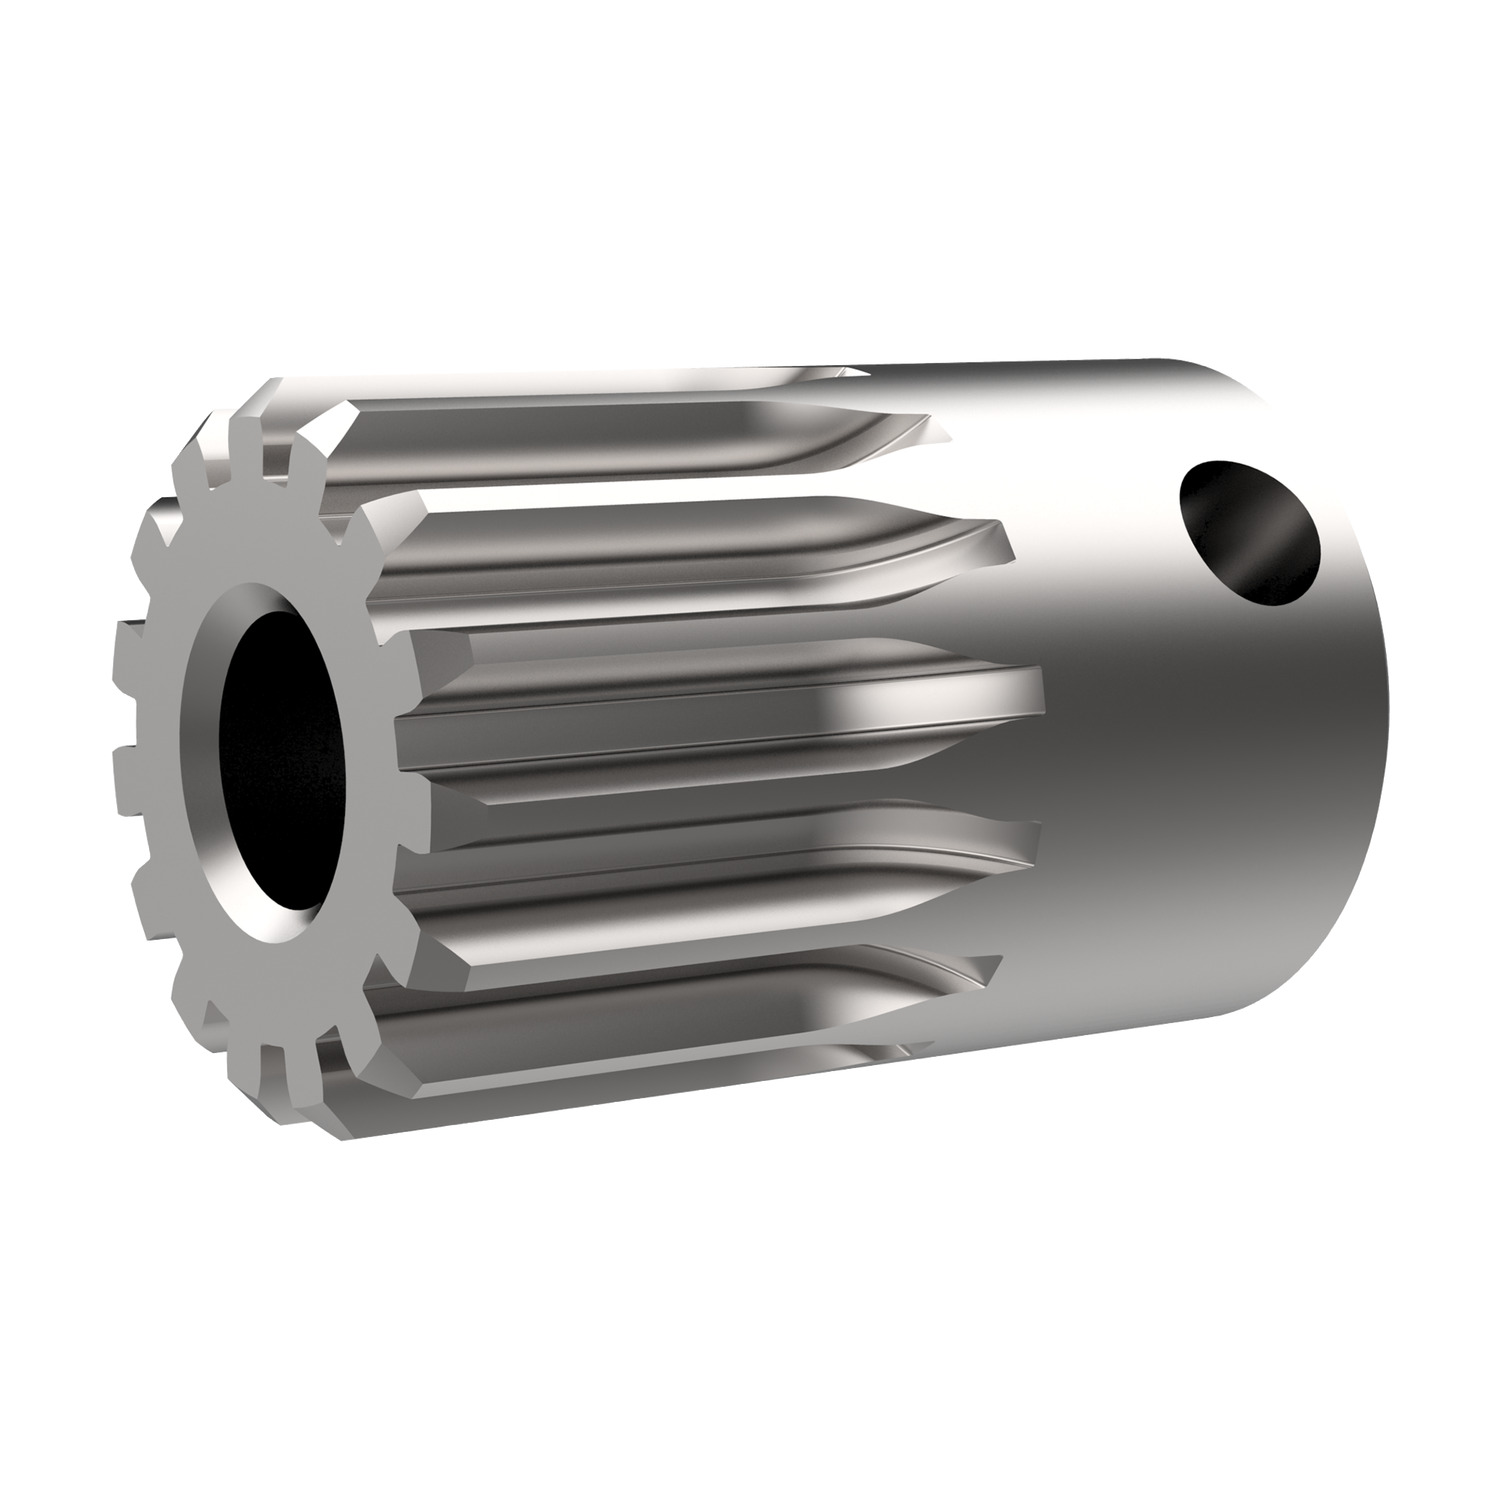 Product R5138, Spur Gears - Module 0.75 - Steel carbon steel - 14-15 teeth / 